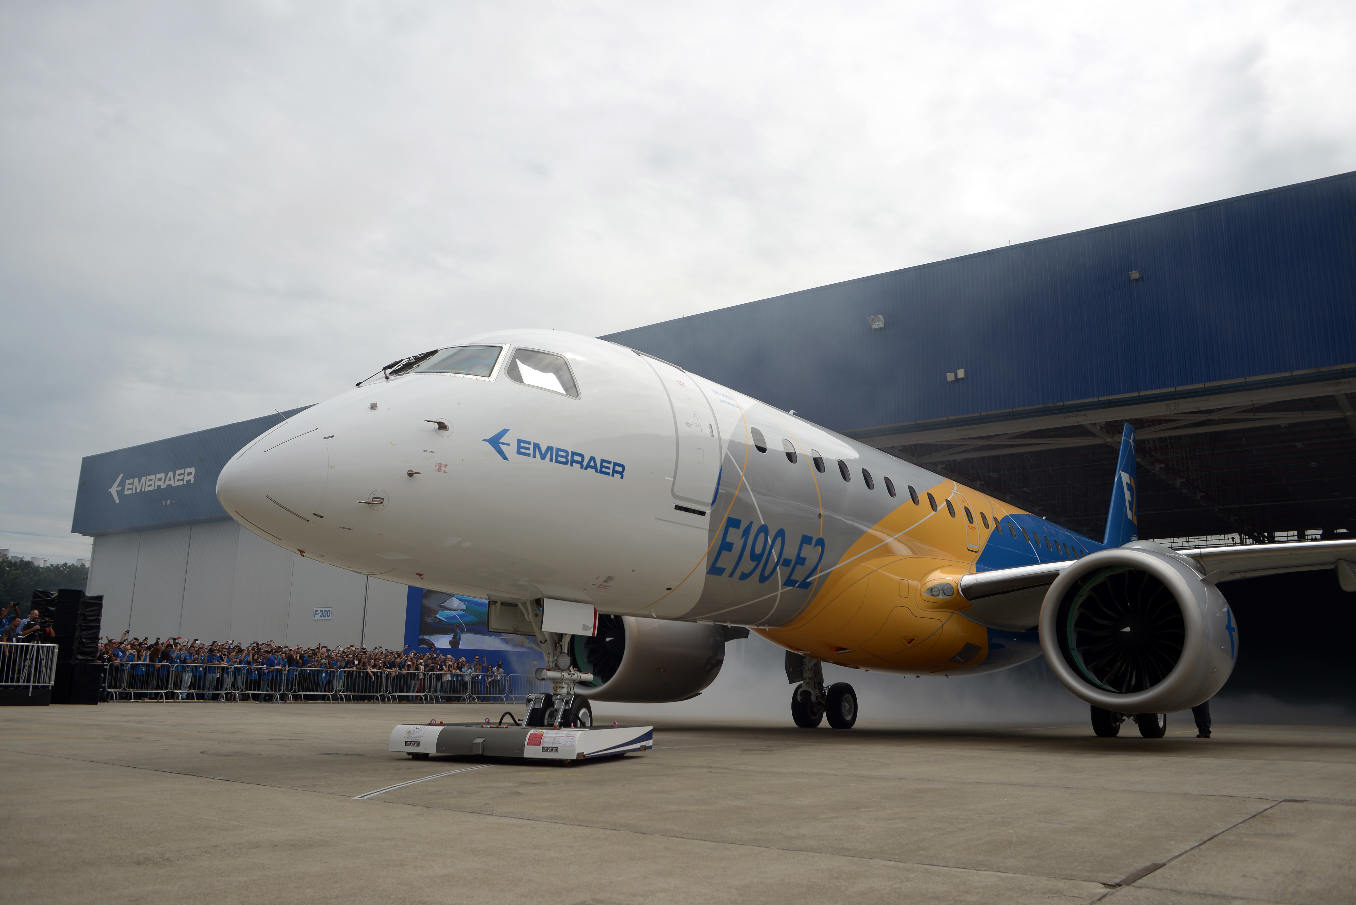 Le premier Embraer E190-E2 sera livré en avril 2018